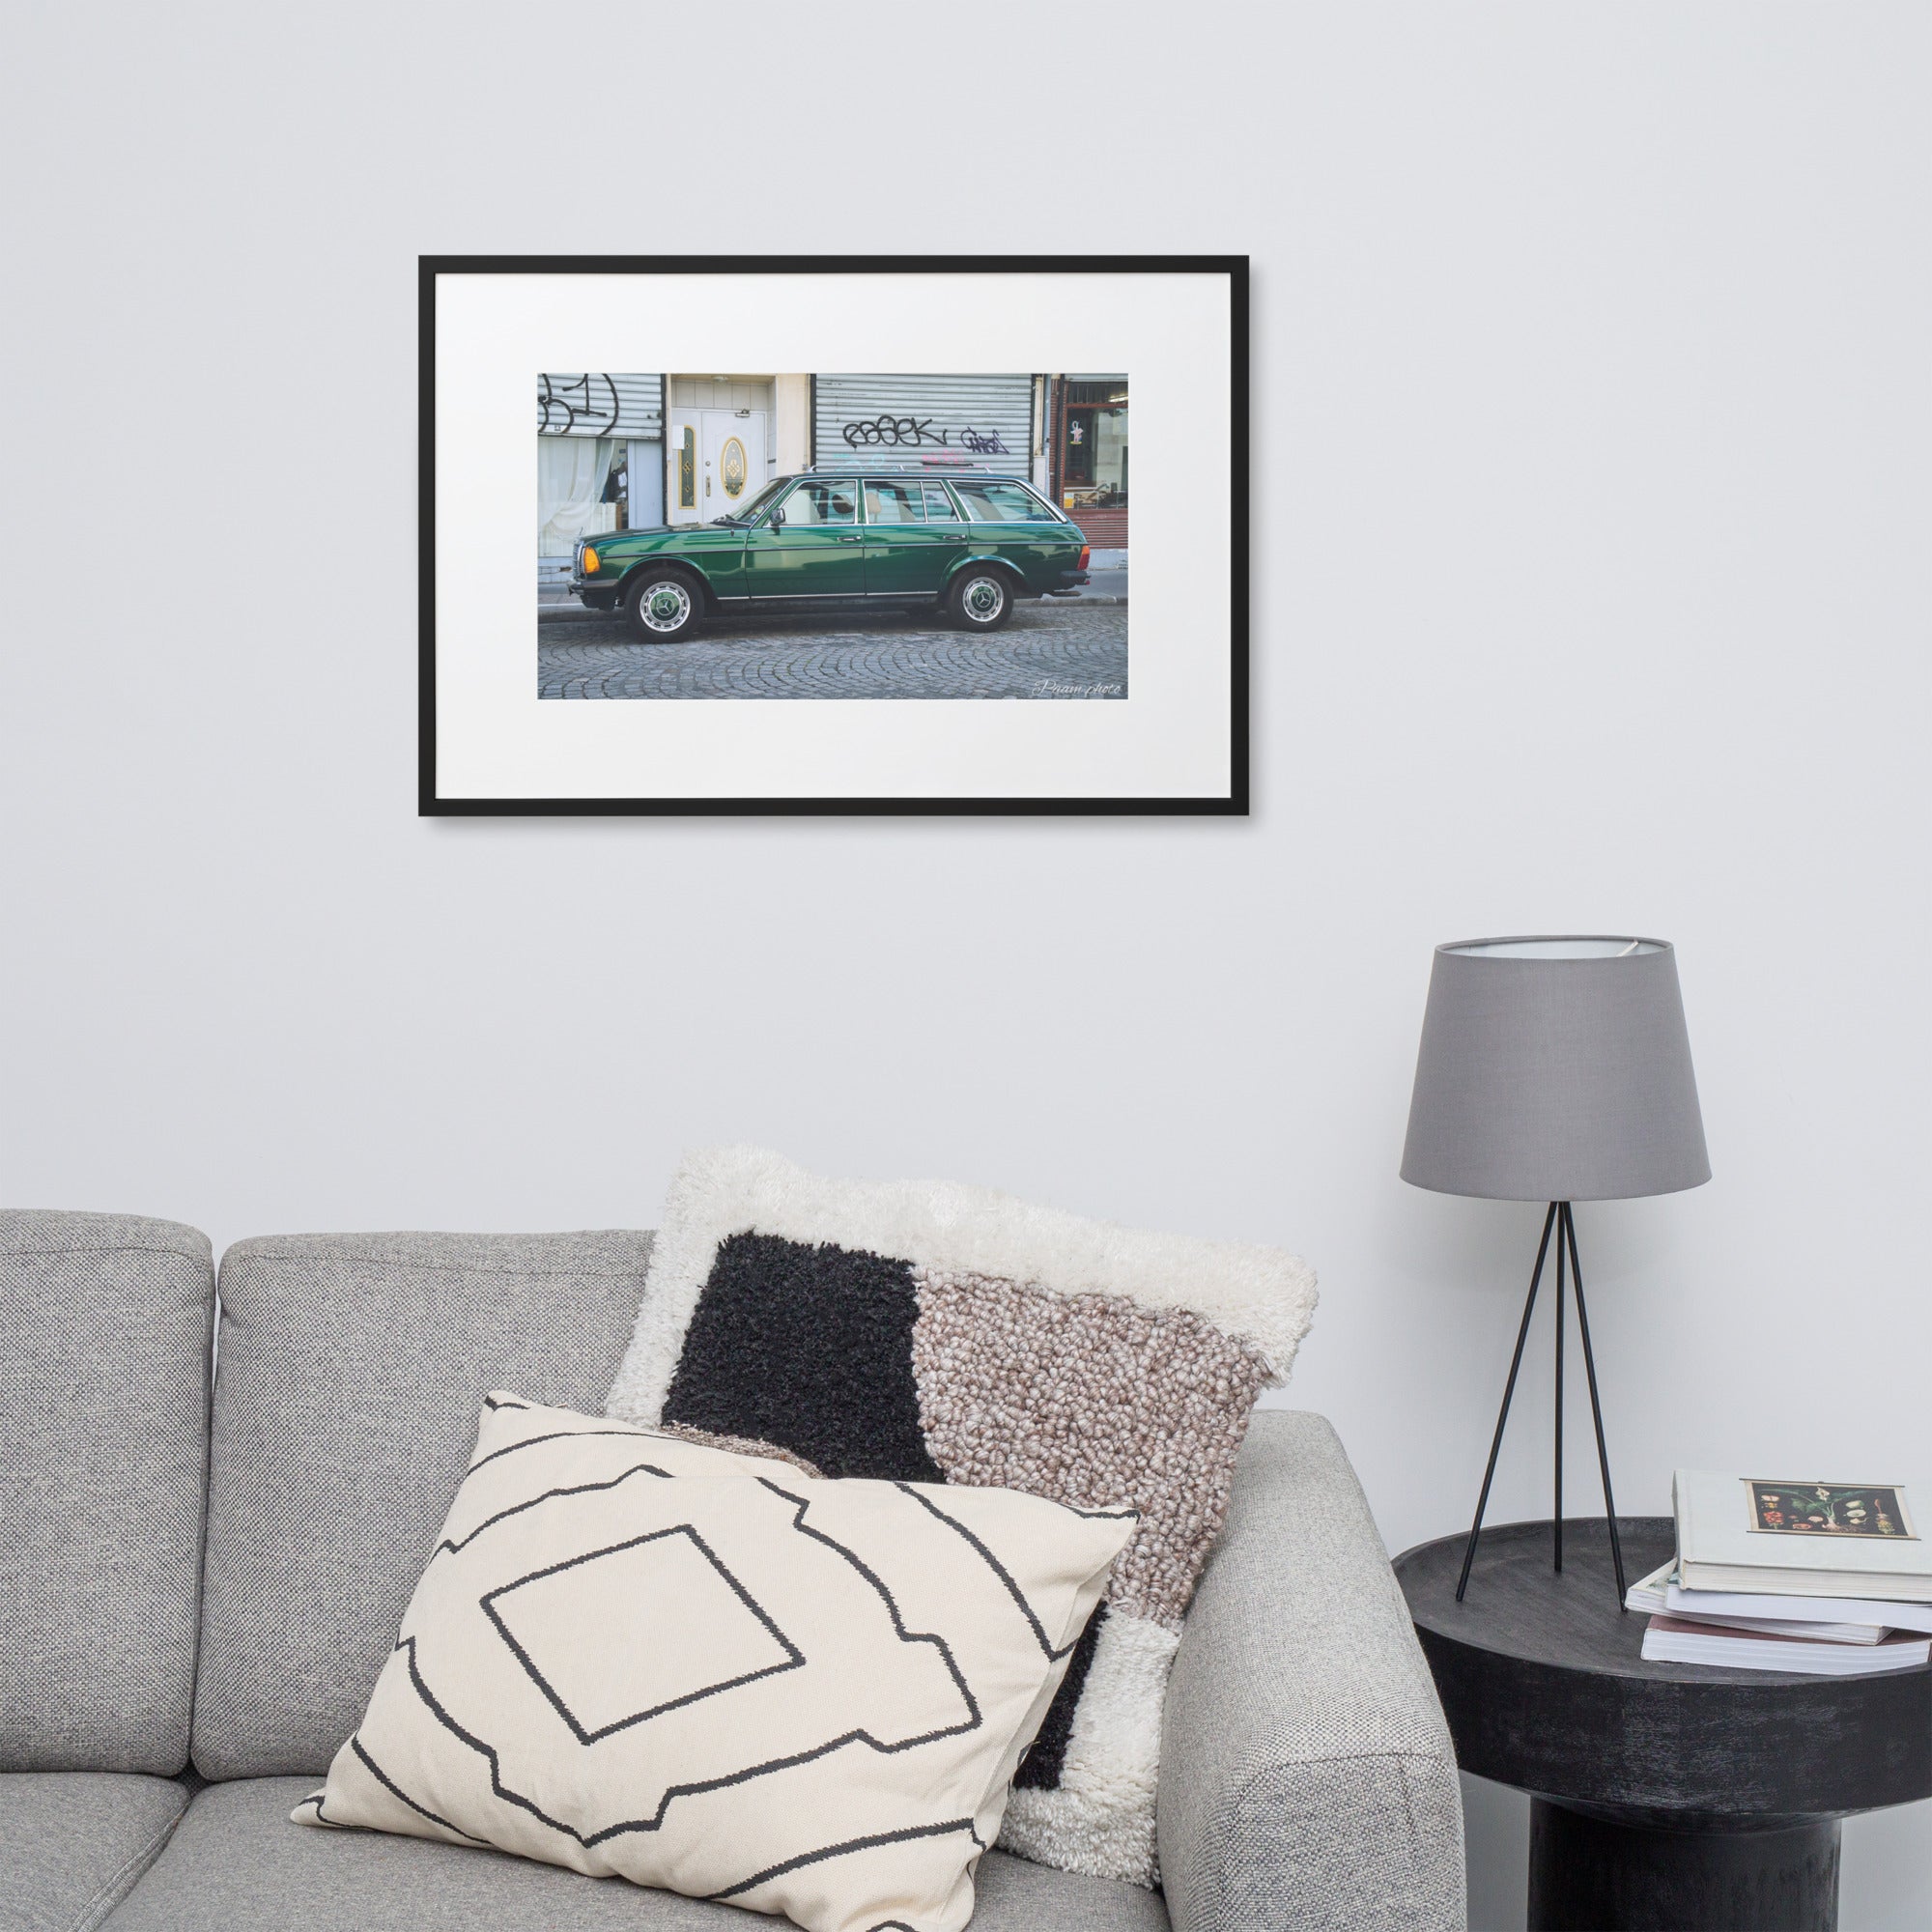 Photographie 'Mercedes-Benz Type 123' par Pamm.Photo, montrant une automobile vintage vert délicat stationnée dans une rue pittoresque de Paris, illustrant l'élégance intemporelle de cette icône de l'automobile.